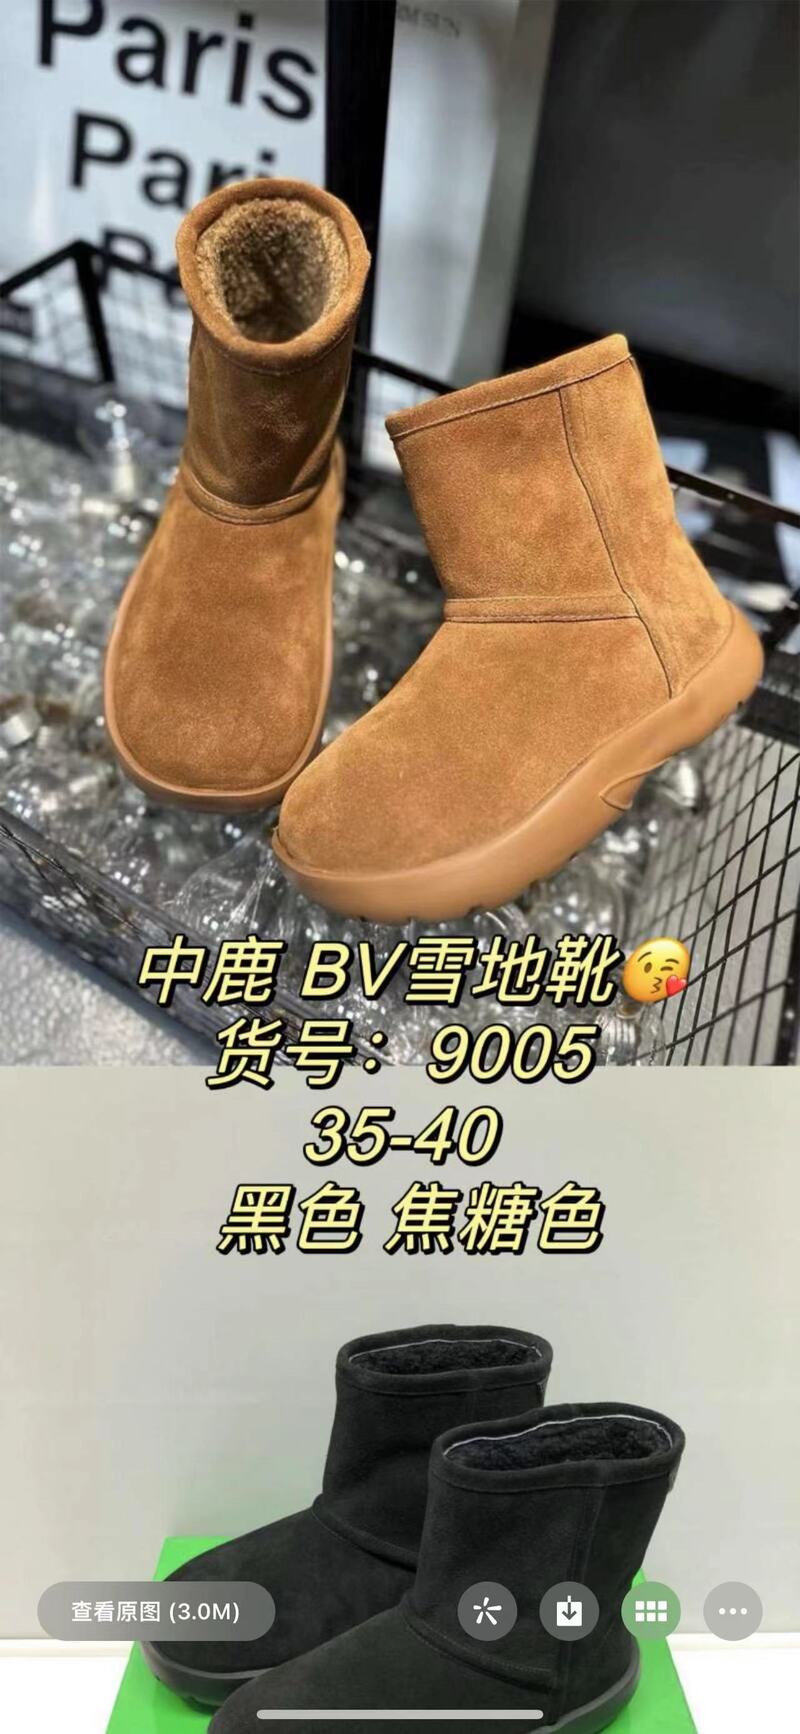 中鹿鞋业-9005